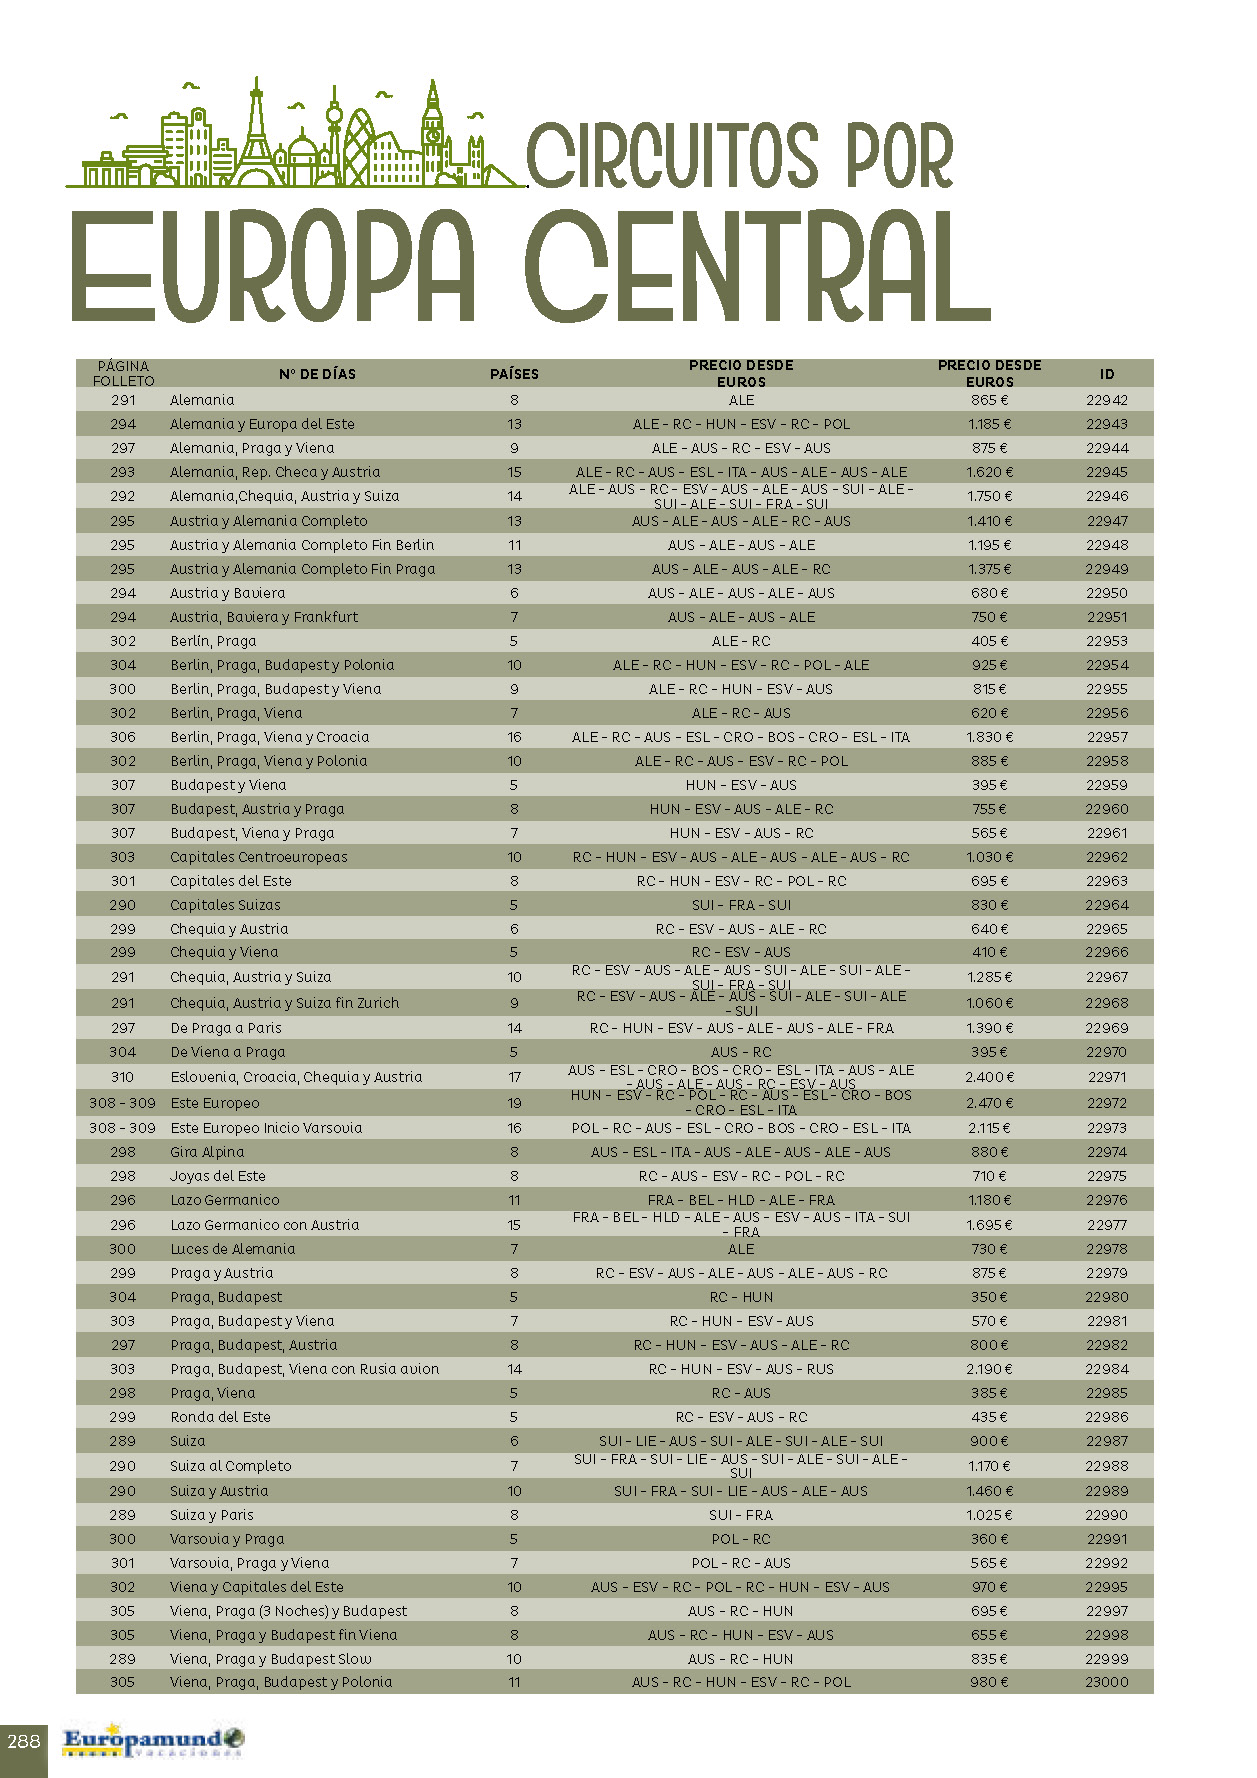 Catalogo Europamundo Vacaciones Circuitos por Europa Central 2022-2024